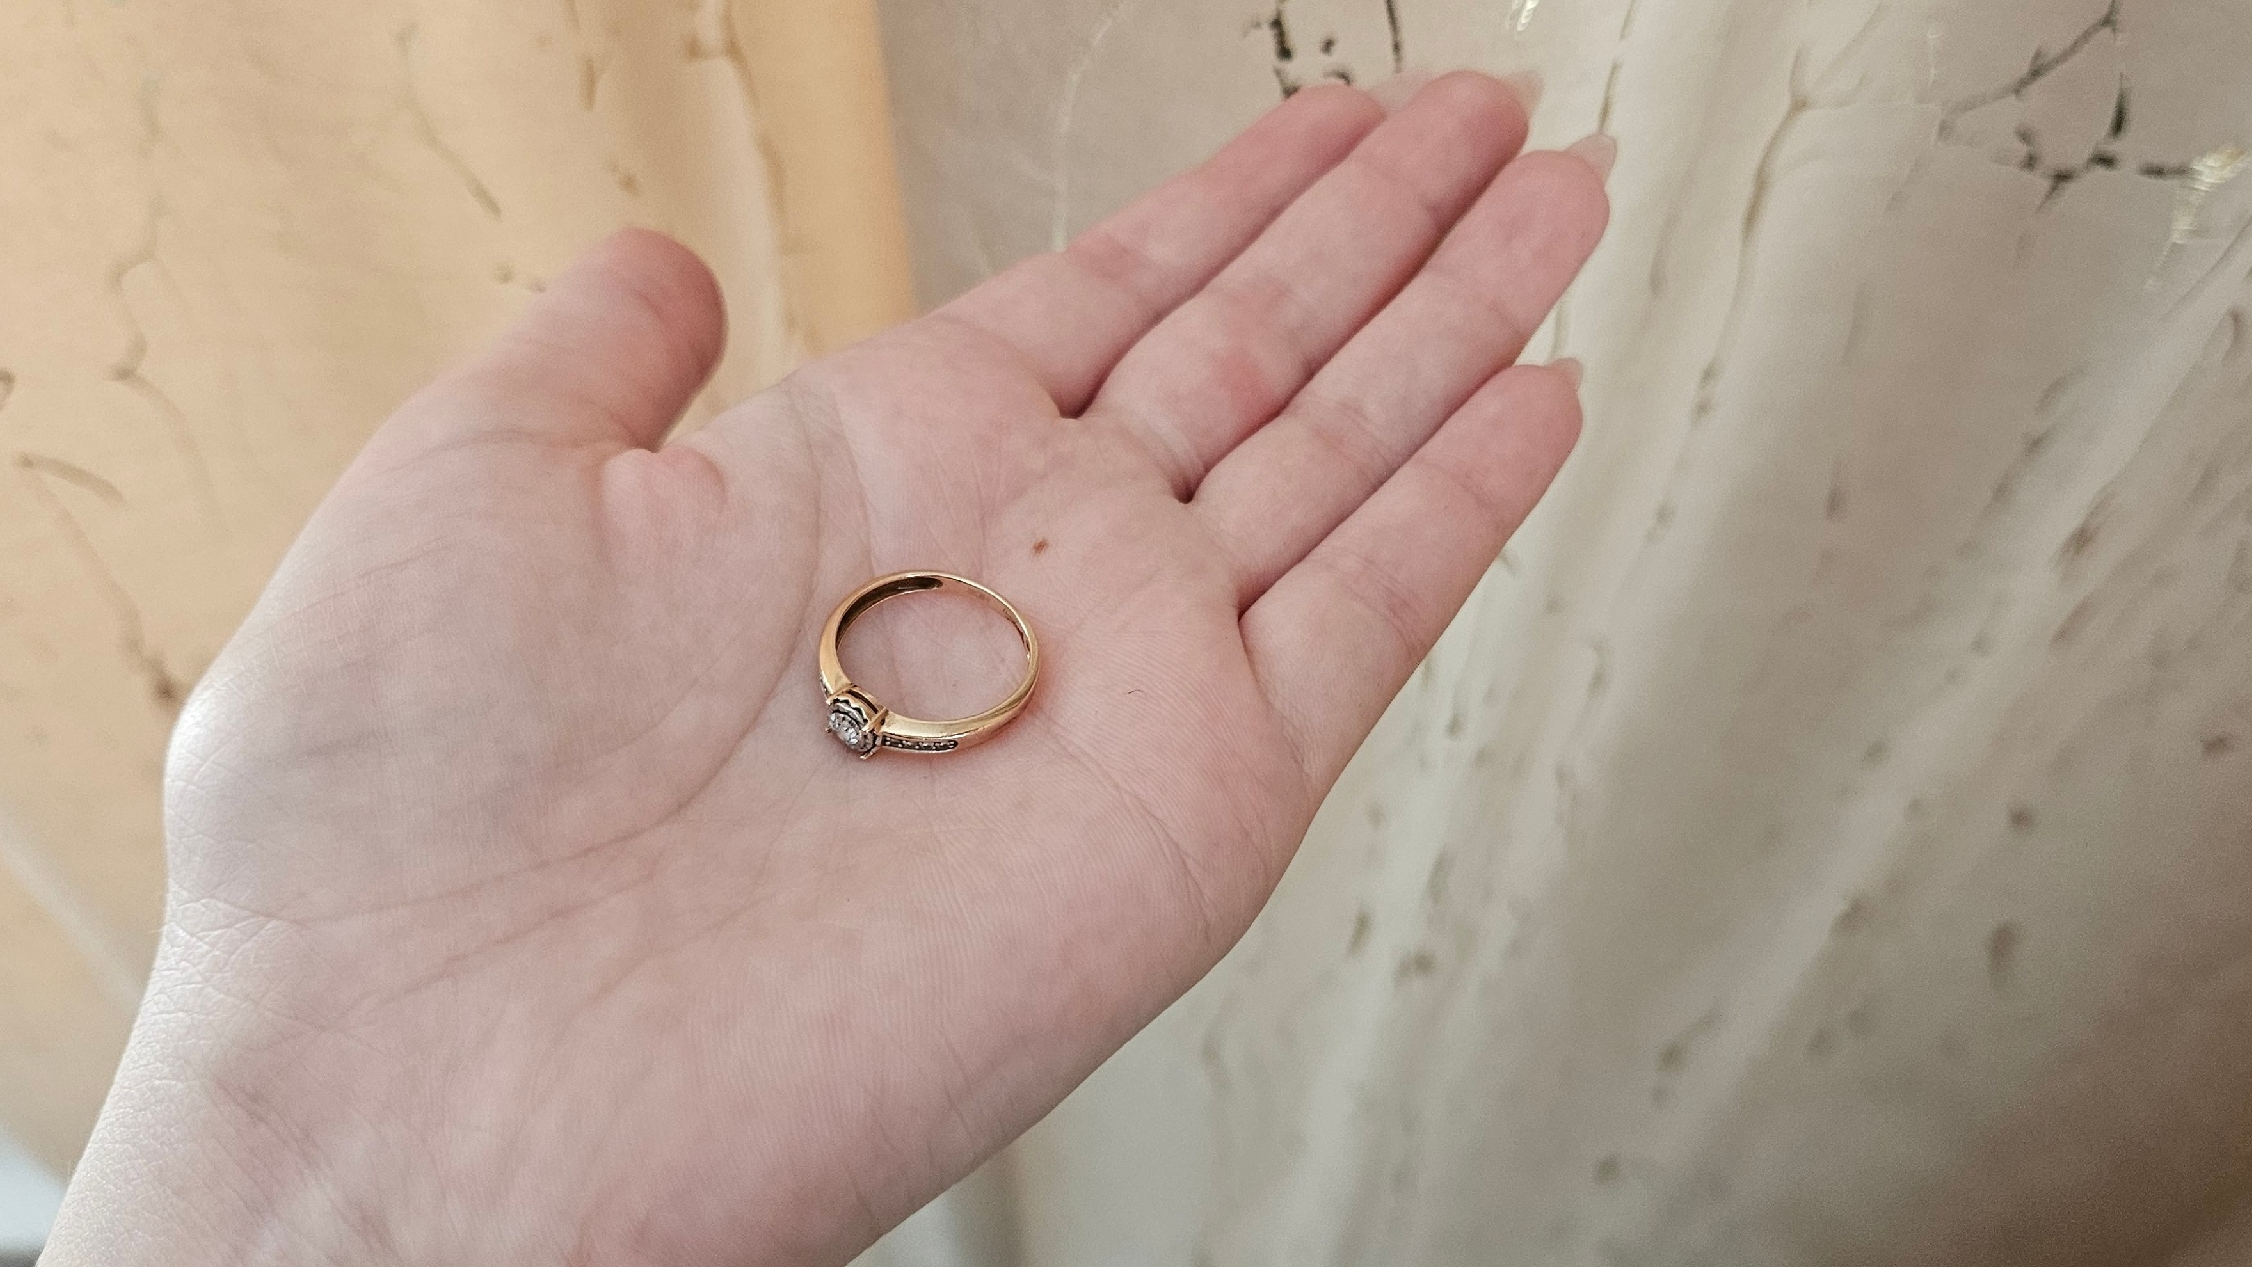 Мужчина из Димитровграда снял кольцо губами с пальца спящей знакомой и сдал в ломбард 